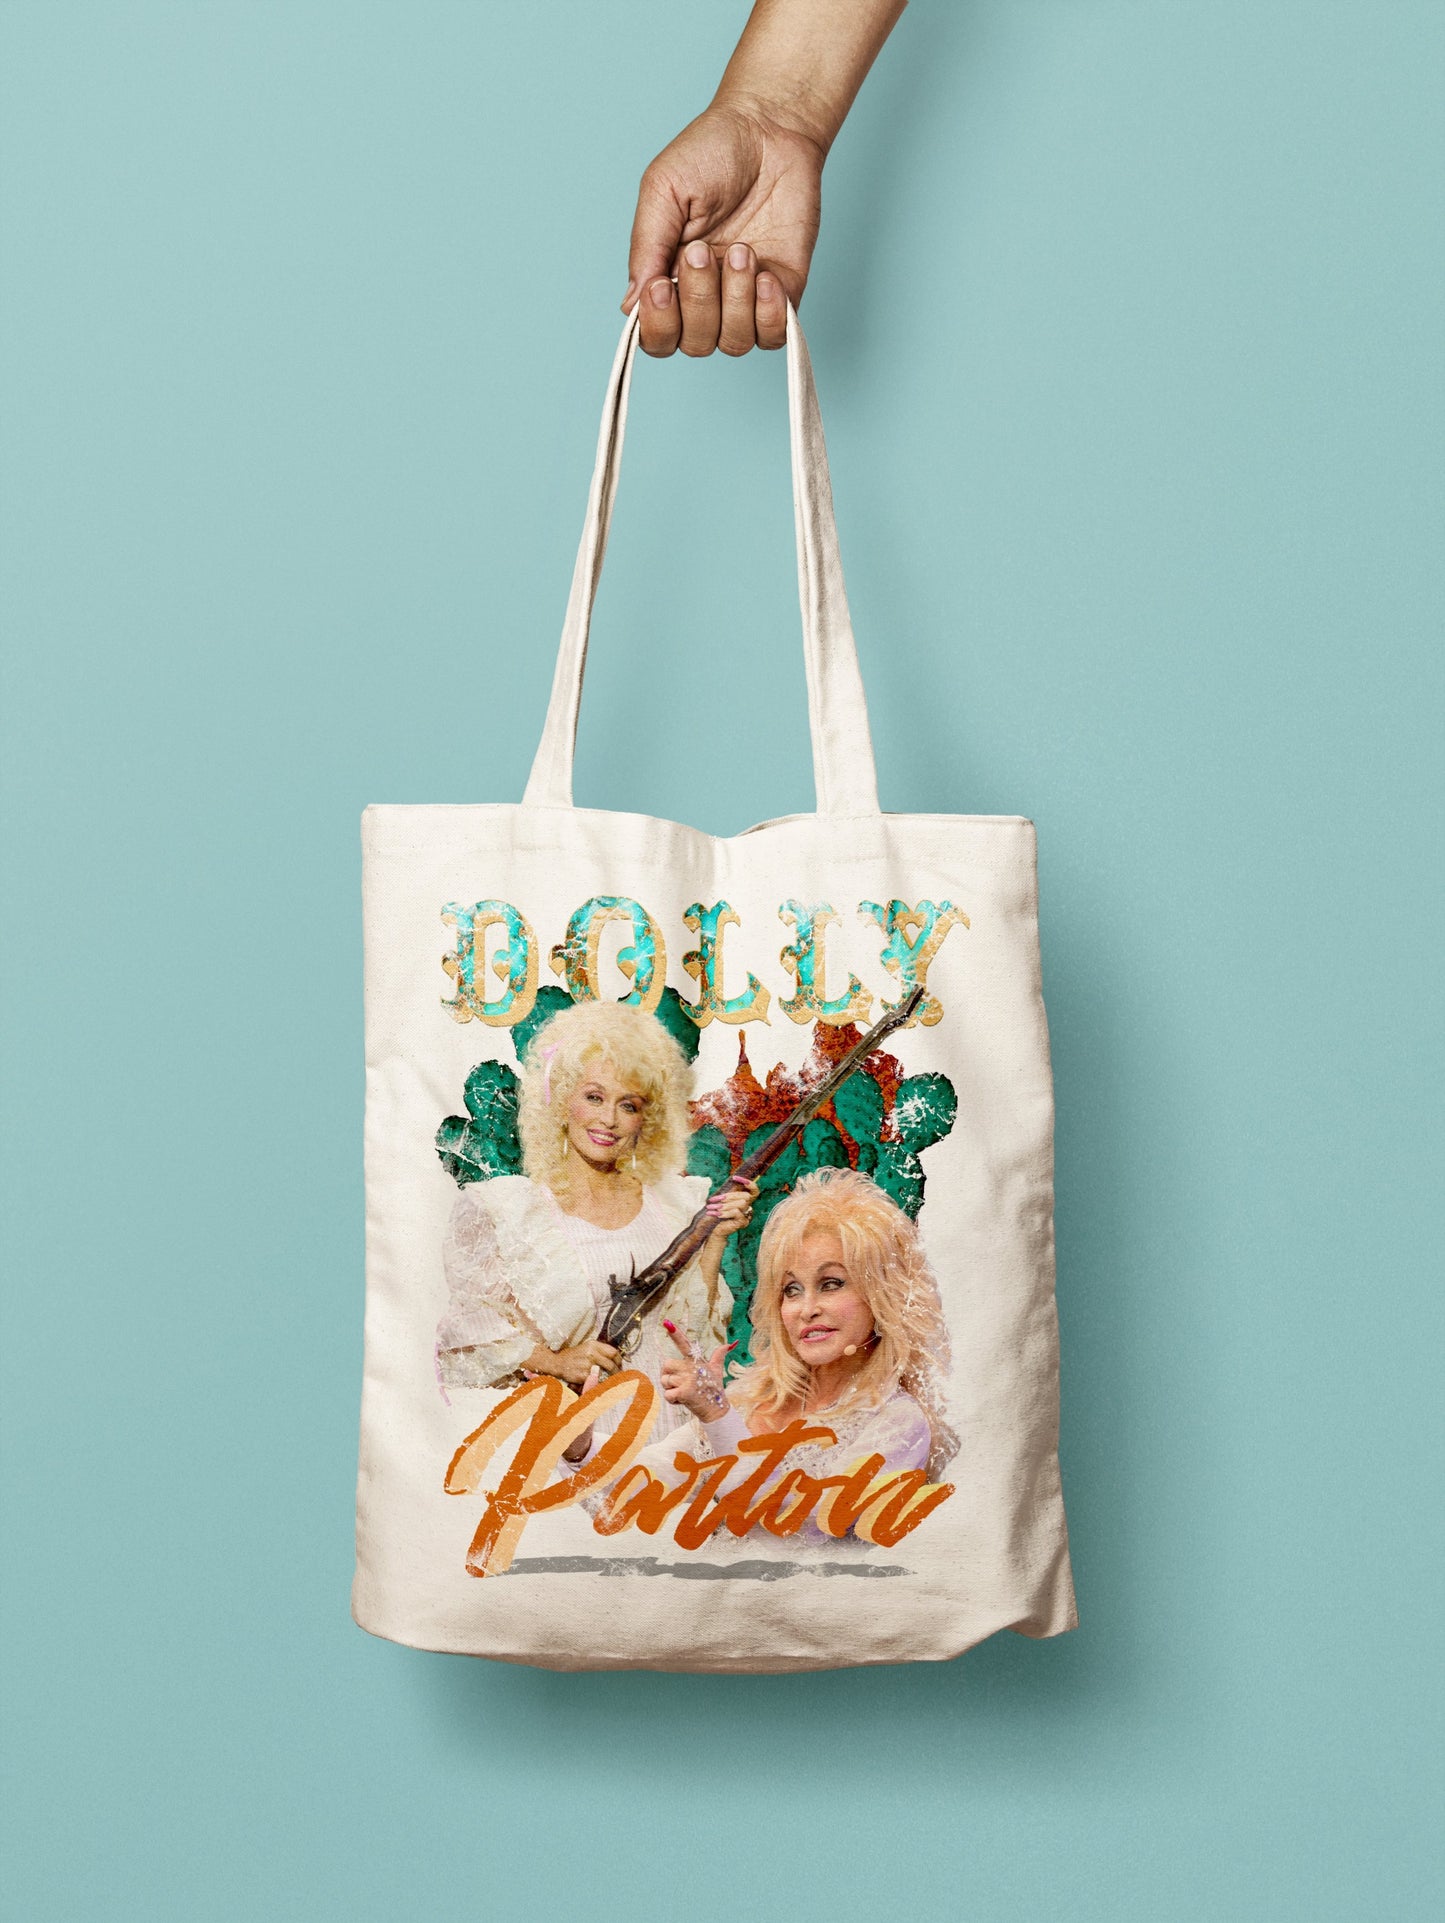 Dolly Parton Vintage Graphic Tote Bag